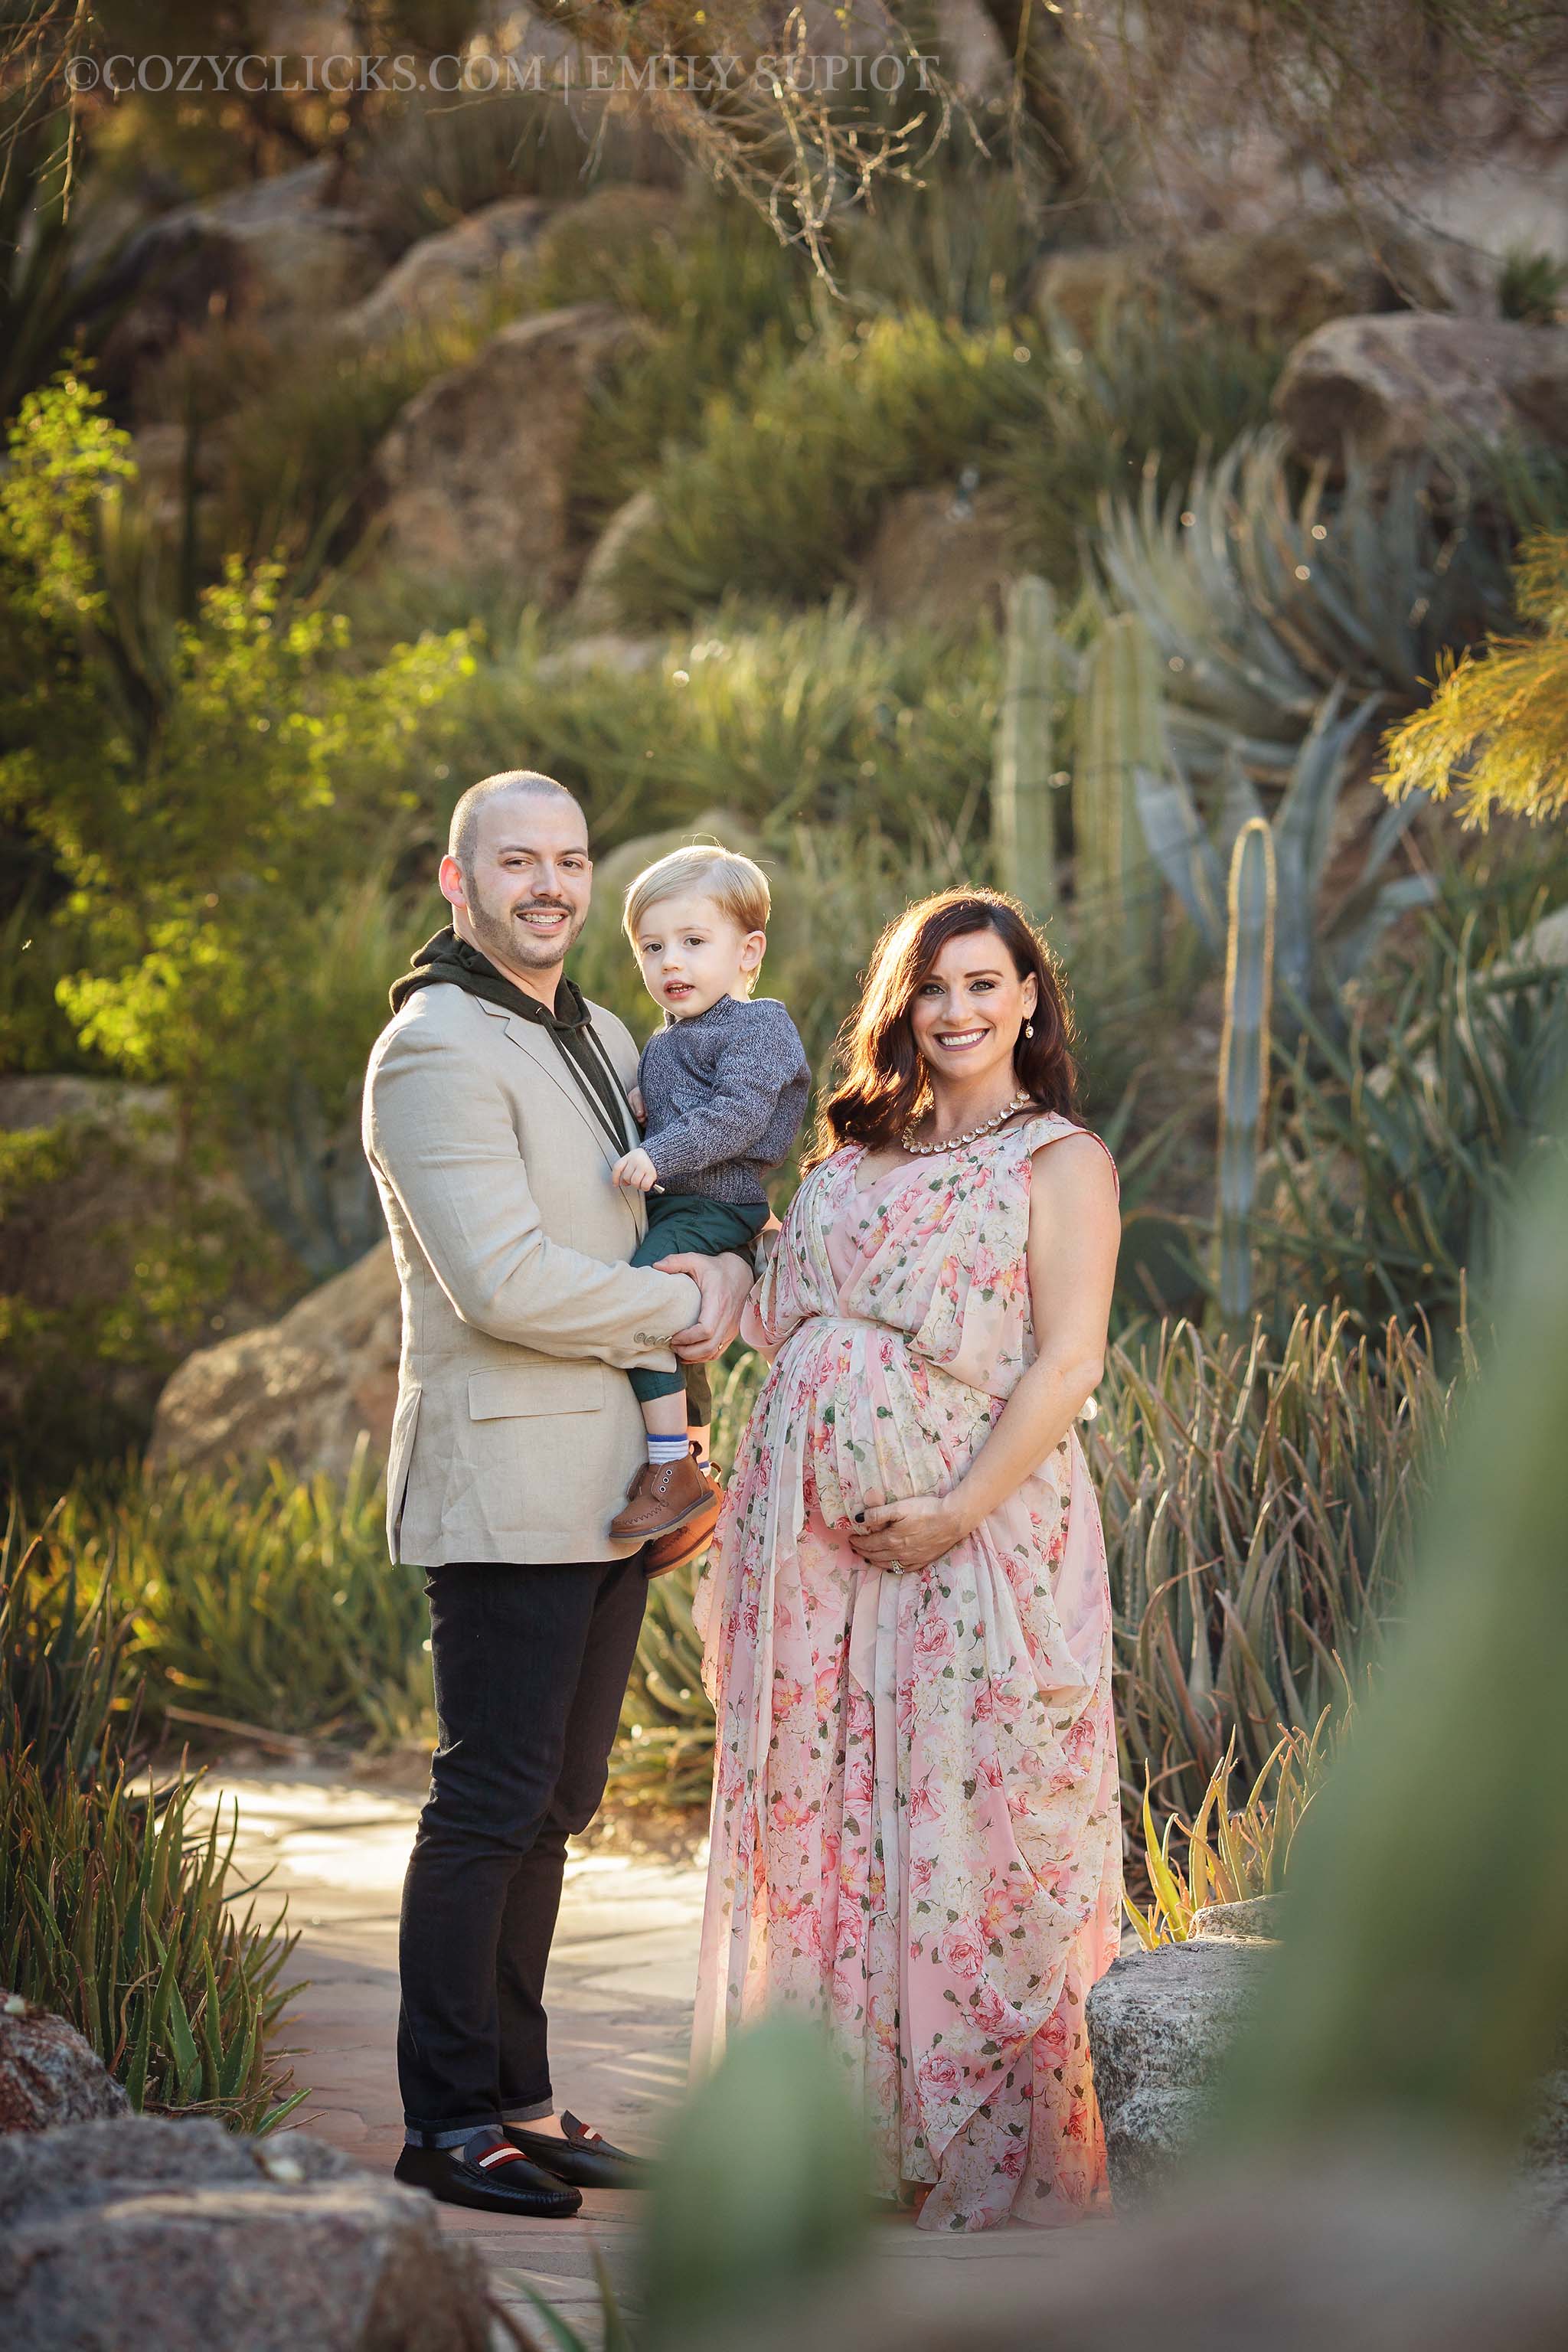 Family maternity photography in Phoenix Arizona